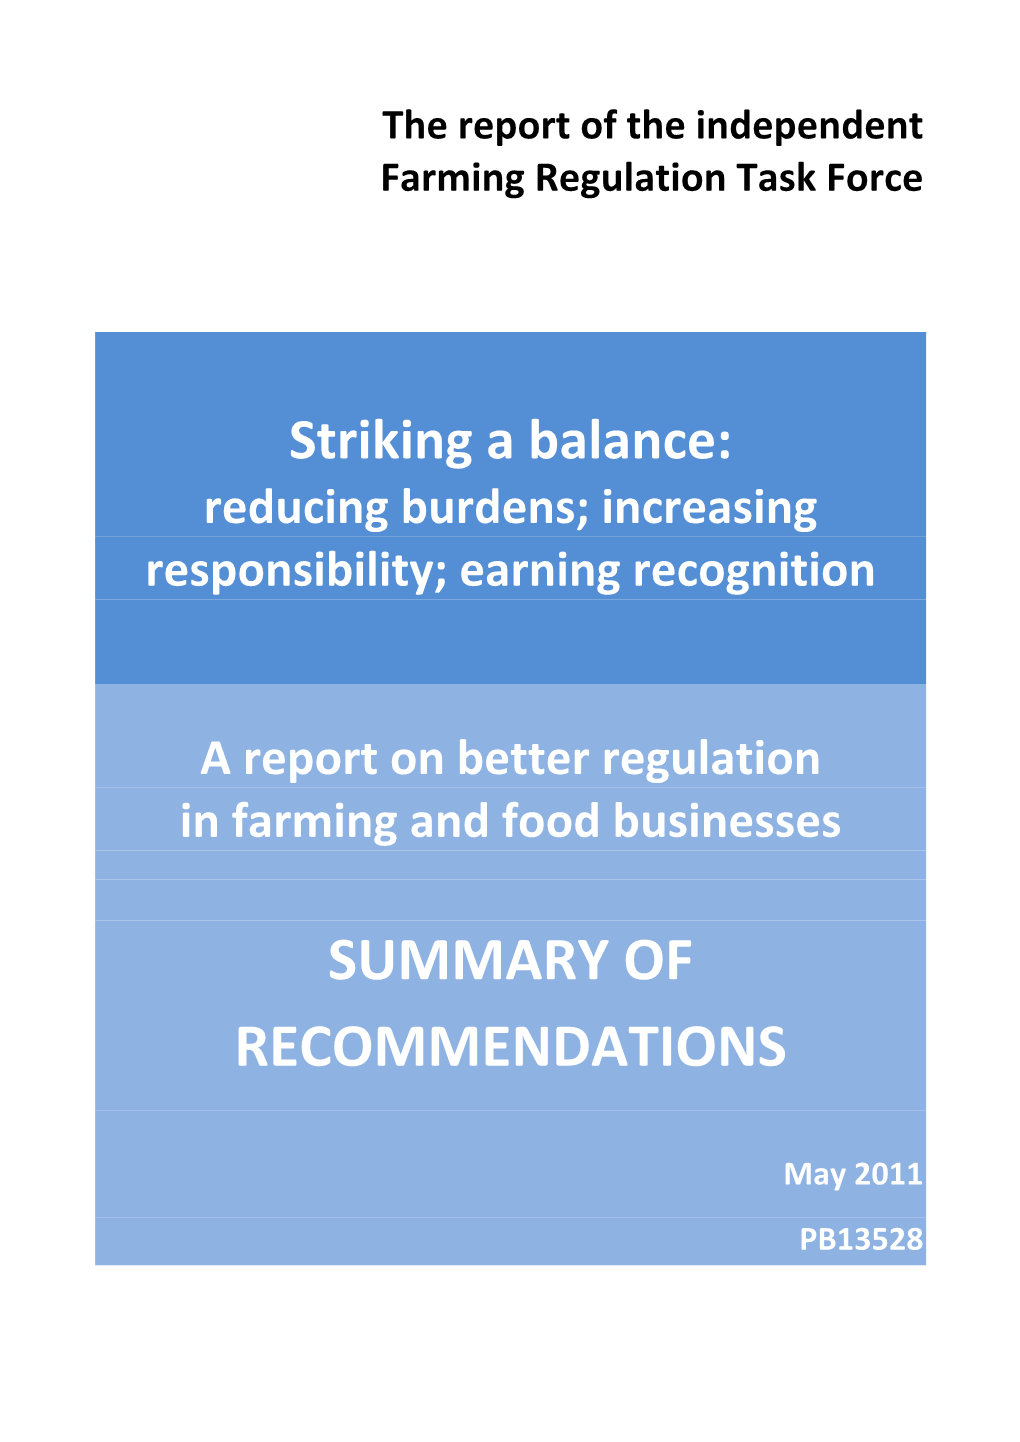 Independent Farming Regulation Task Force